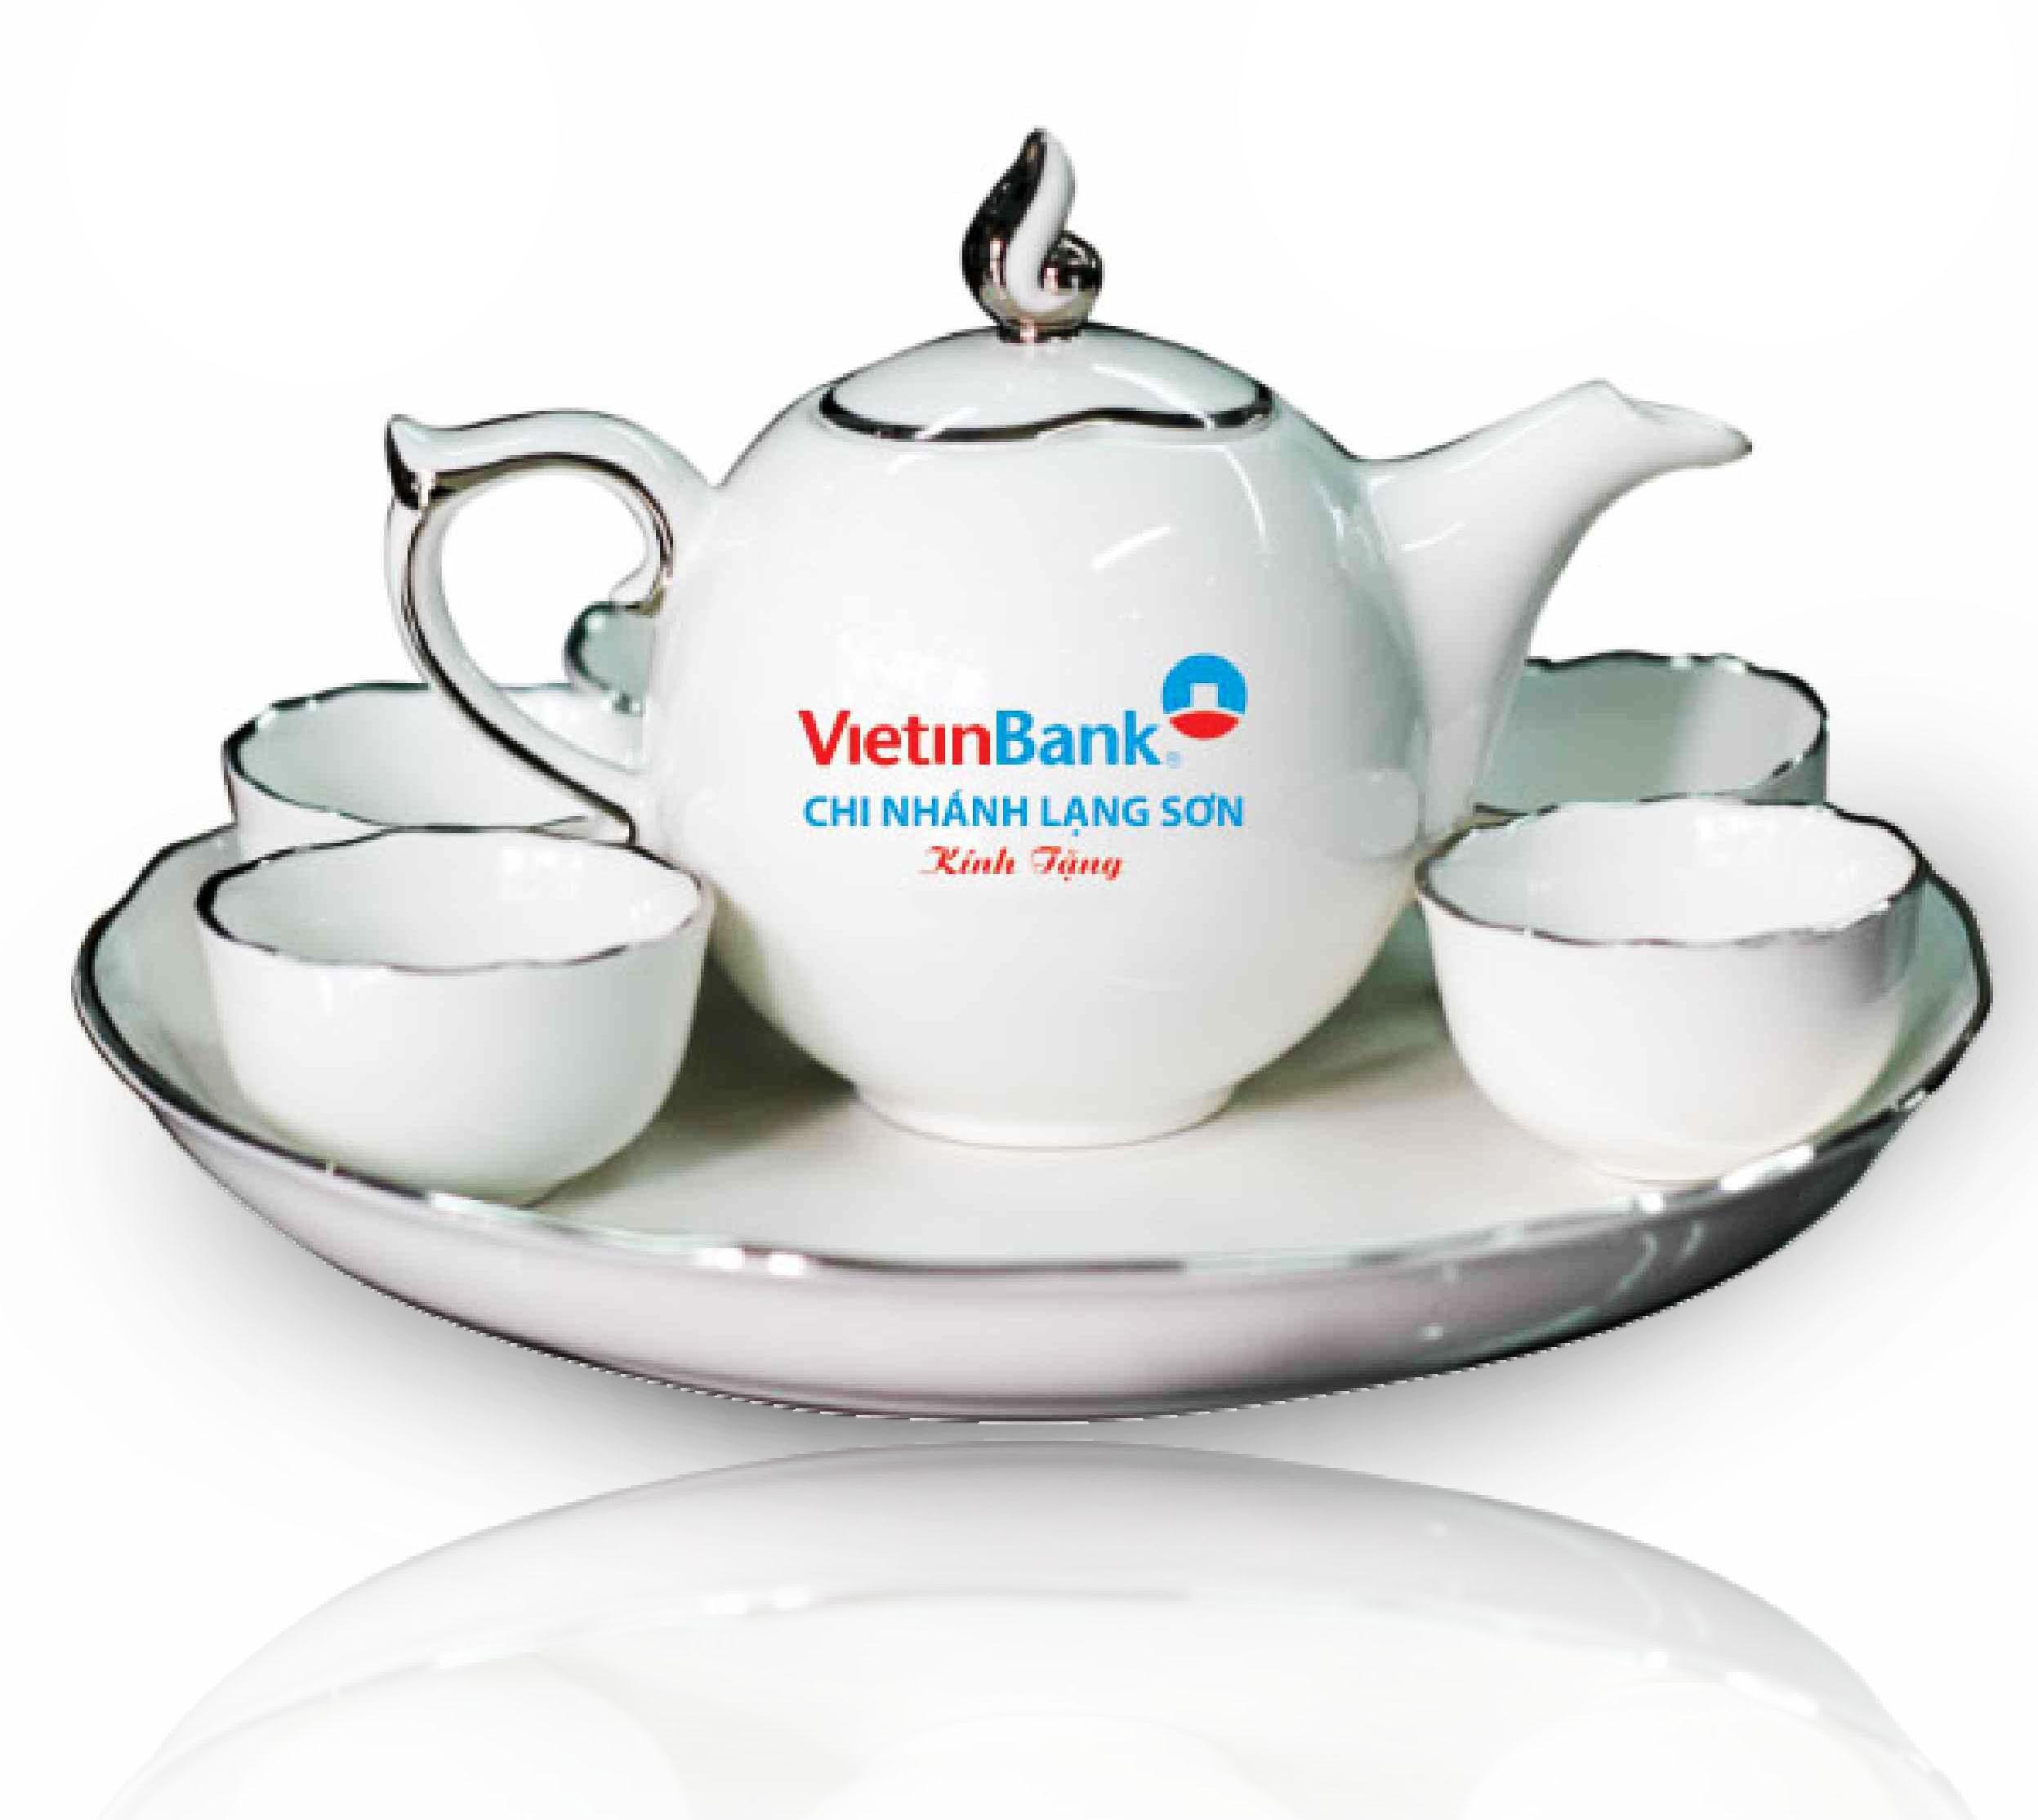 Bộ ấm trà Viettin Bank